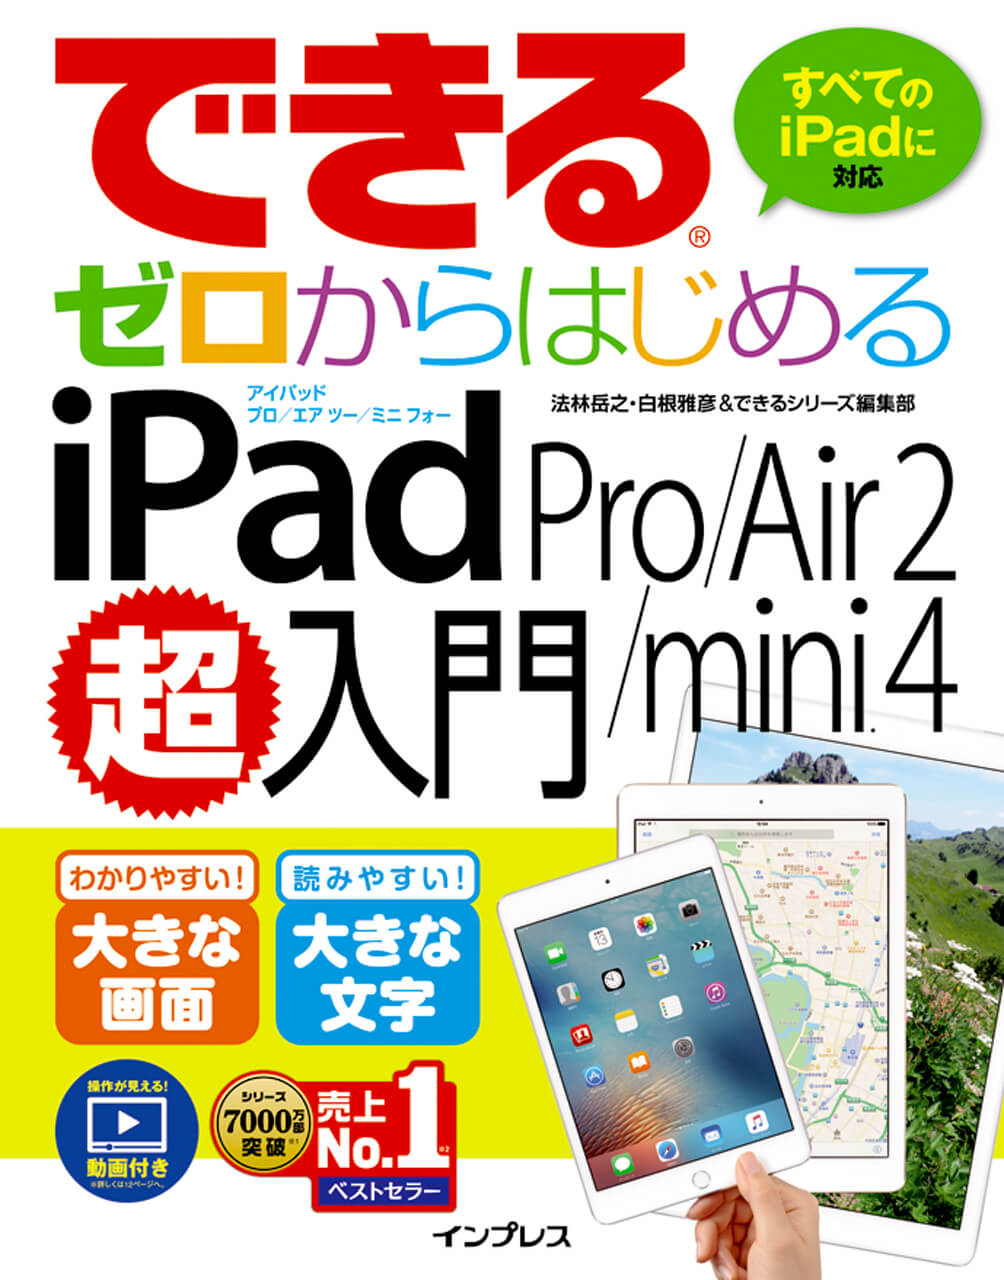 できるゼロからはじめる iPad Pro/Air 2/mini 4 超入門